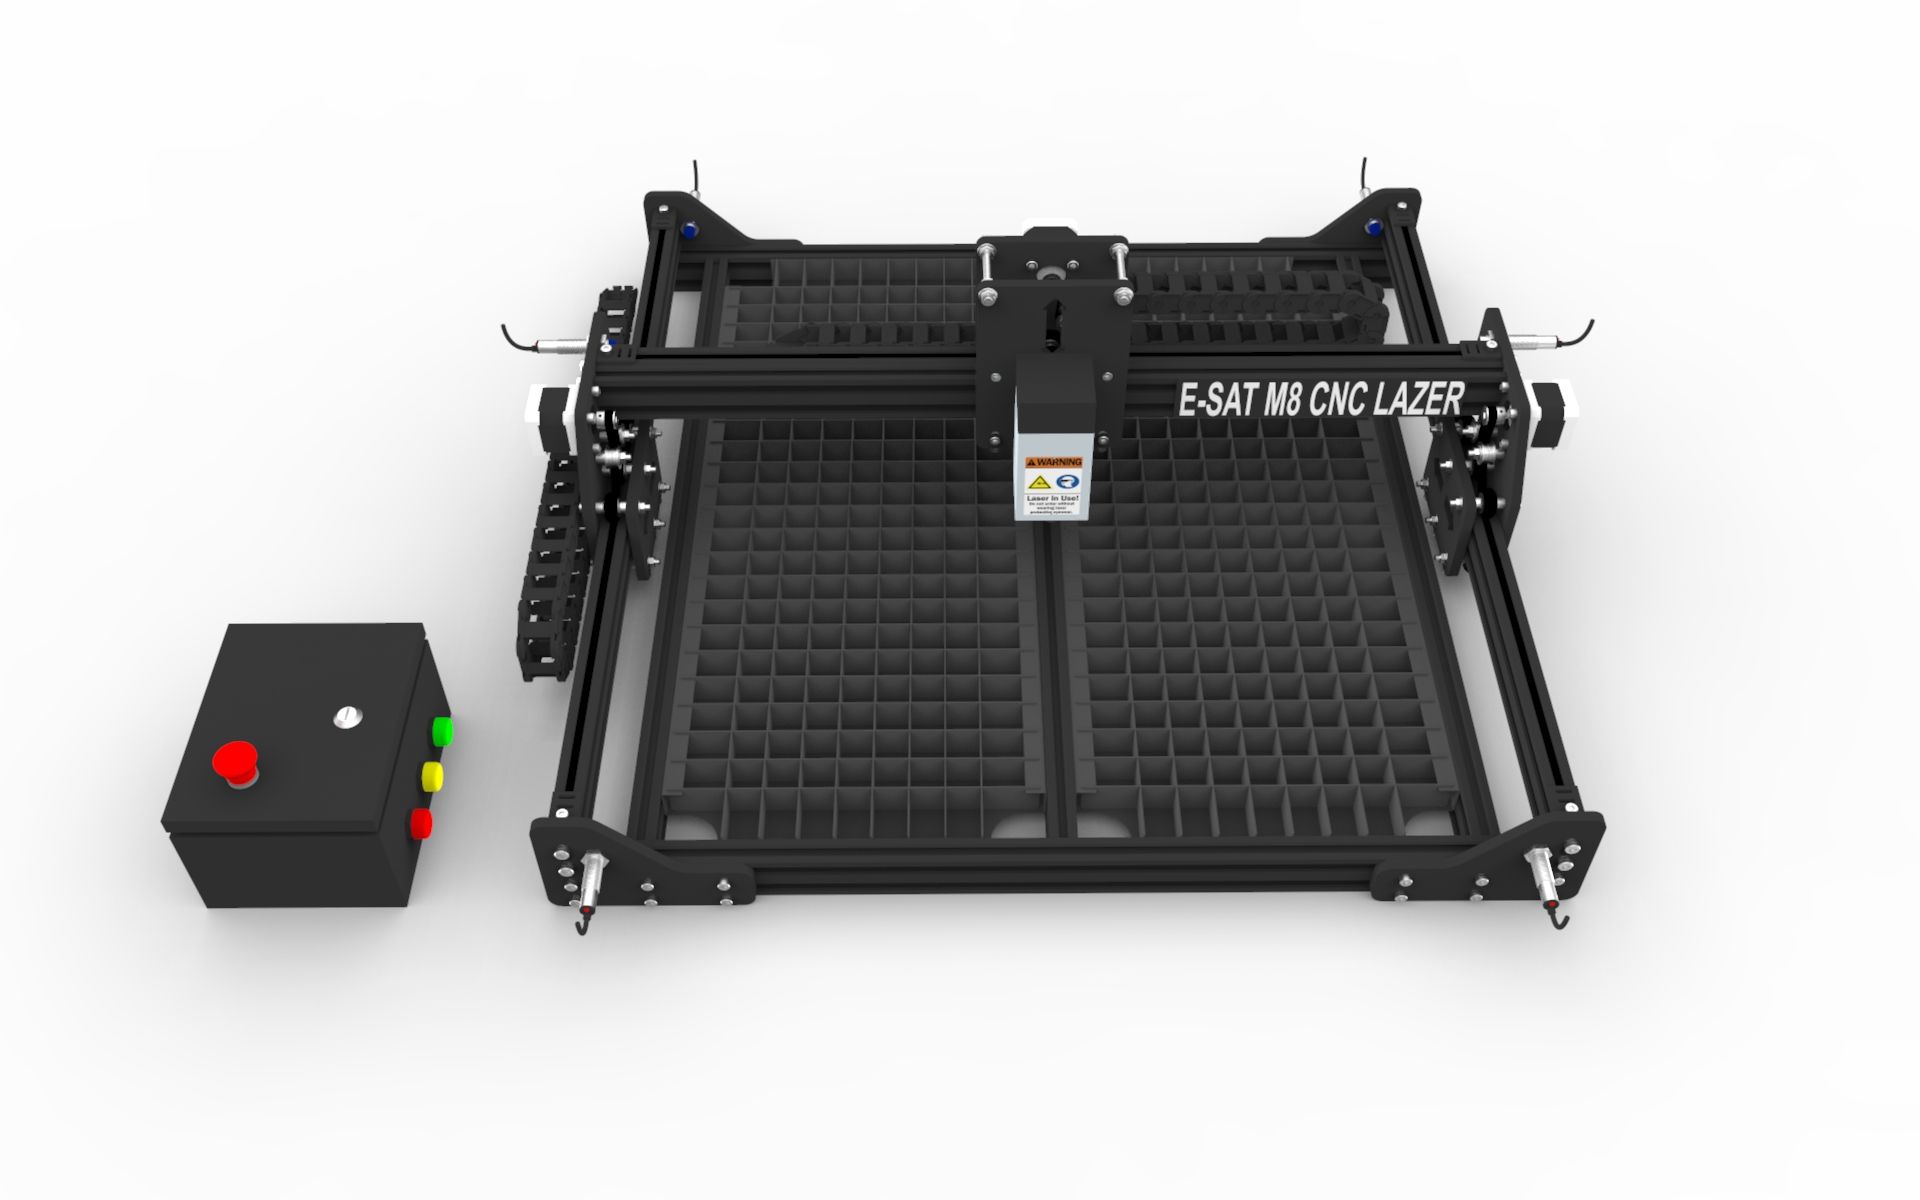 E-SAT M8 Model 50X50 Cm Masaüstü Cnc Lazer Makinesi 2/3 Boyutlu İmalat İçin Bilgisayar Destekli Profosyonel Portable System